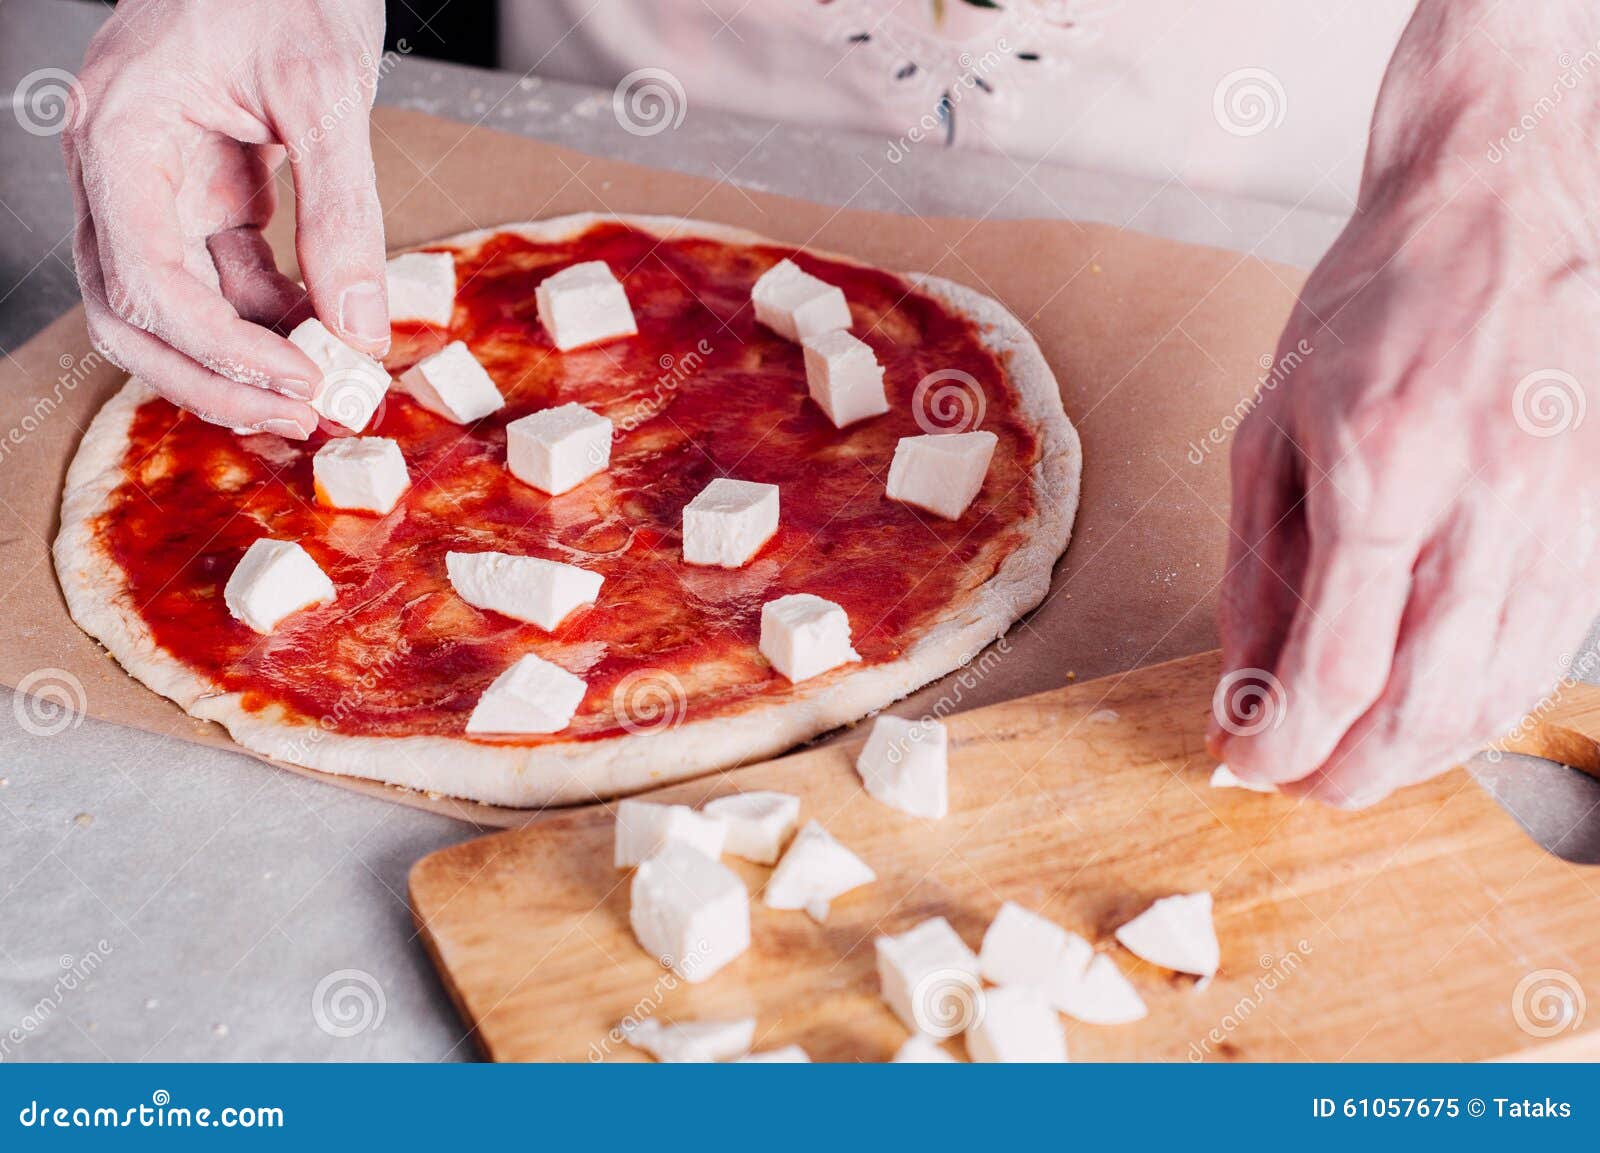 адыгейский сыр плавится в духовке на пицце фото 64